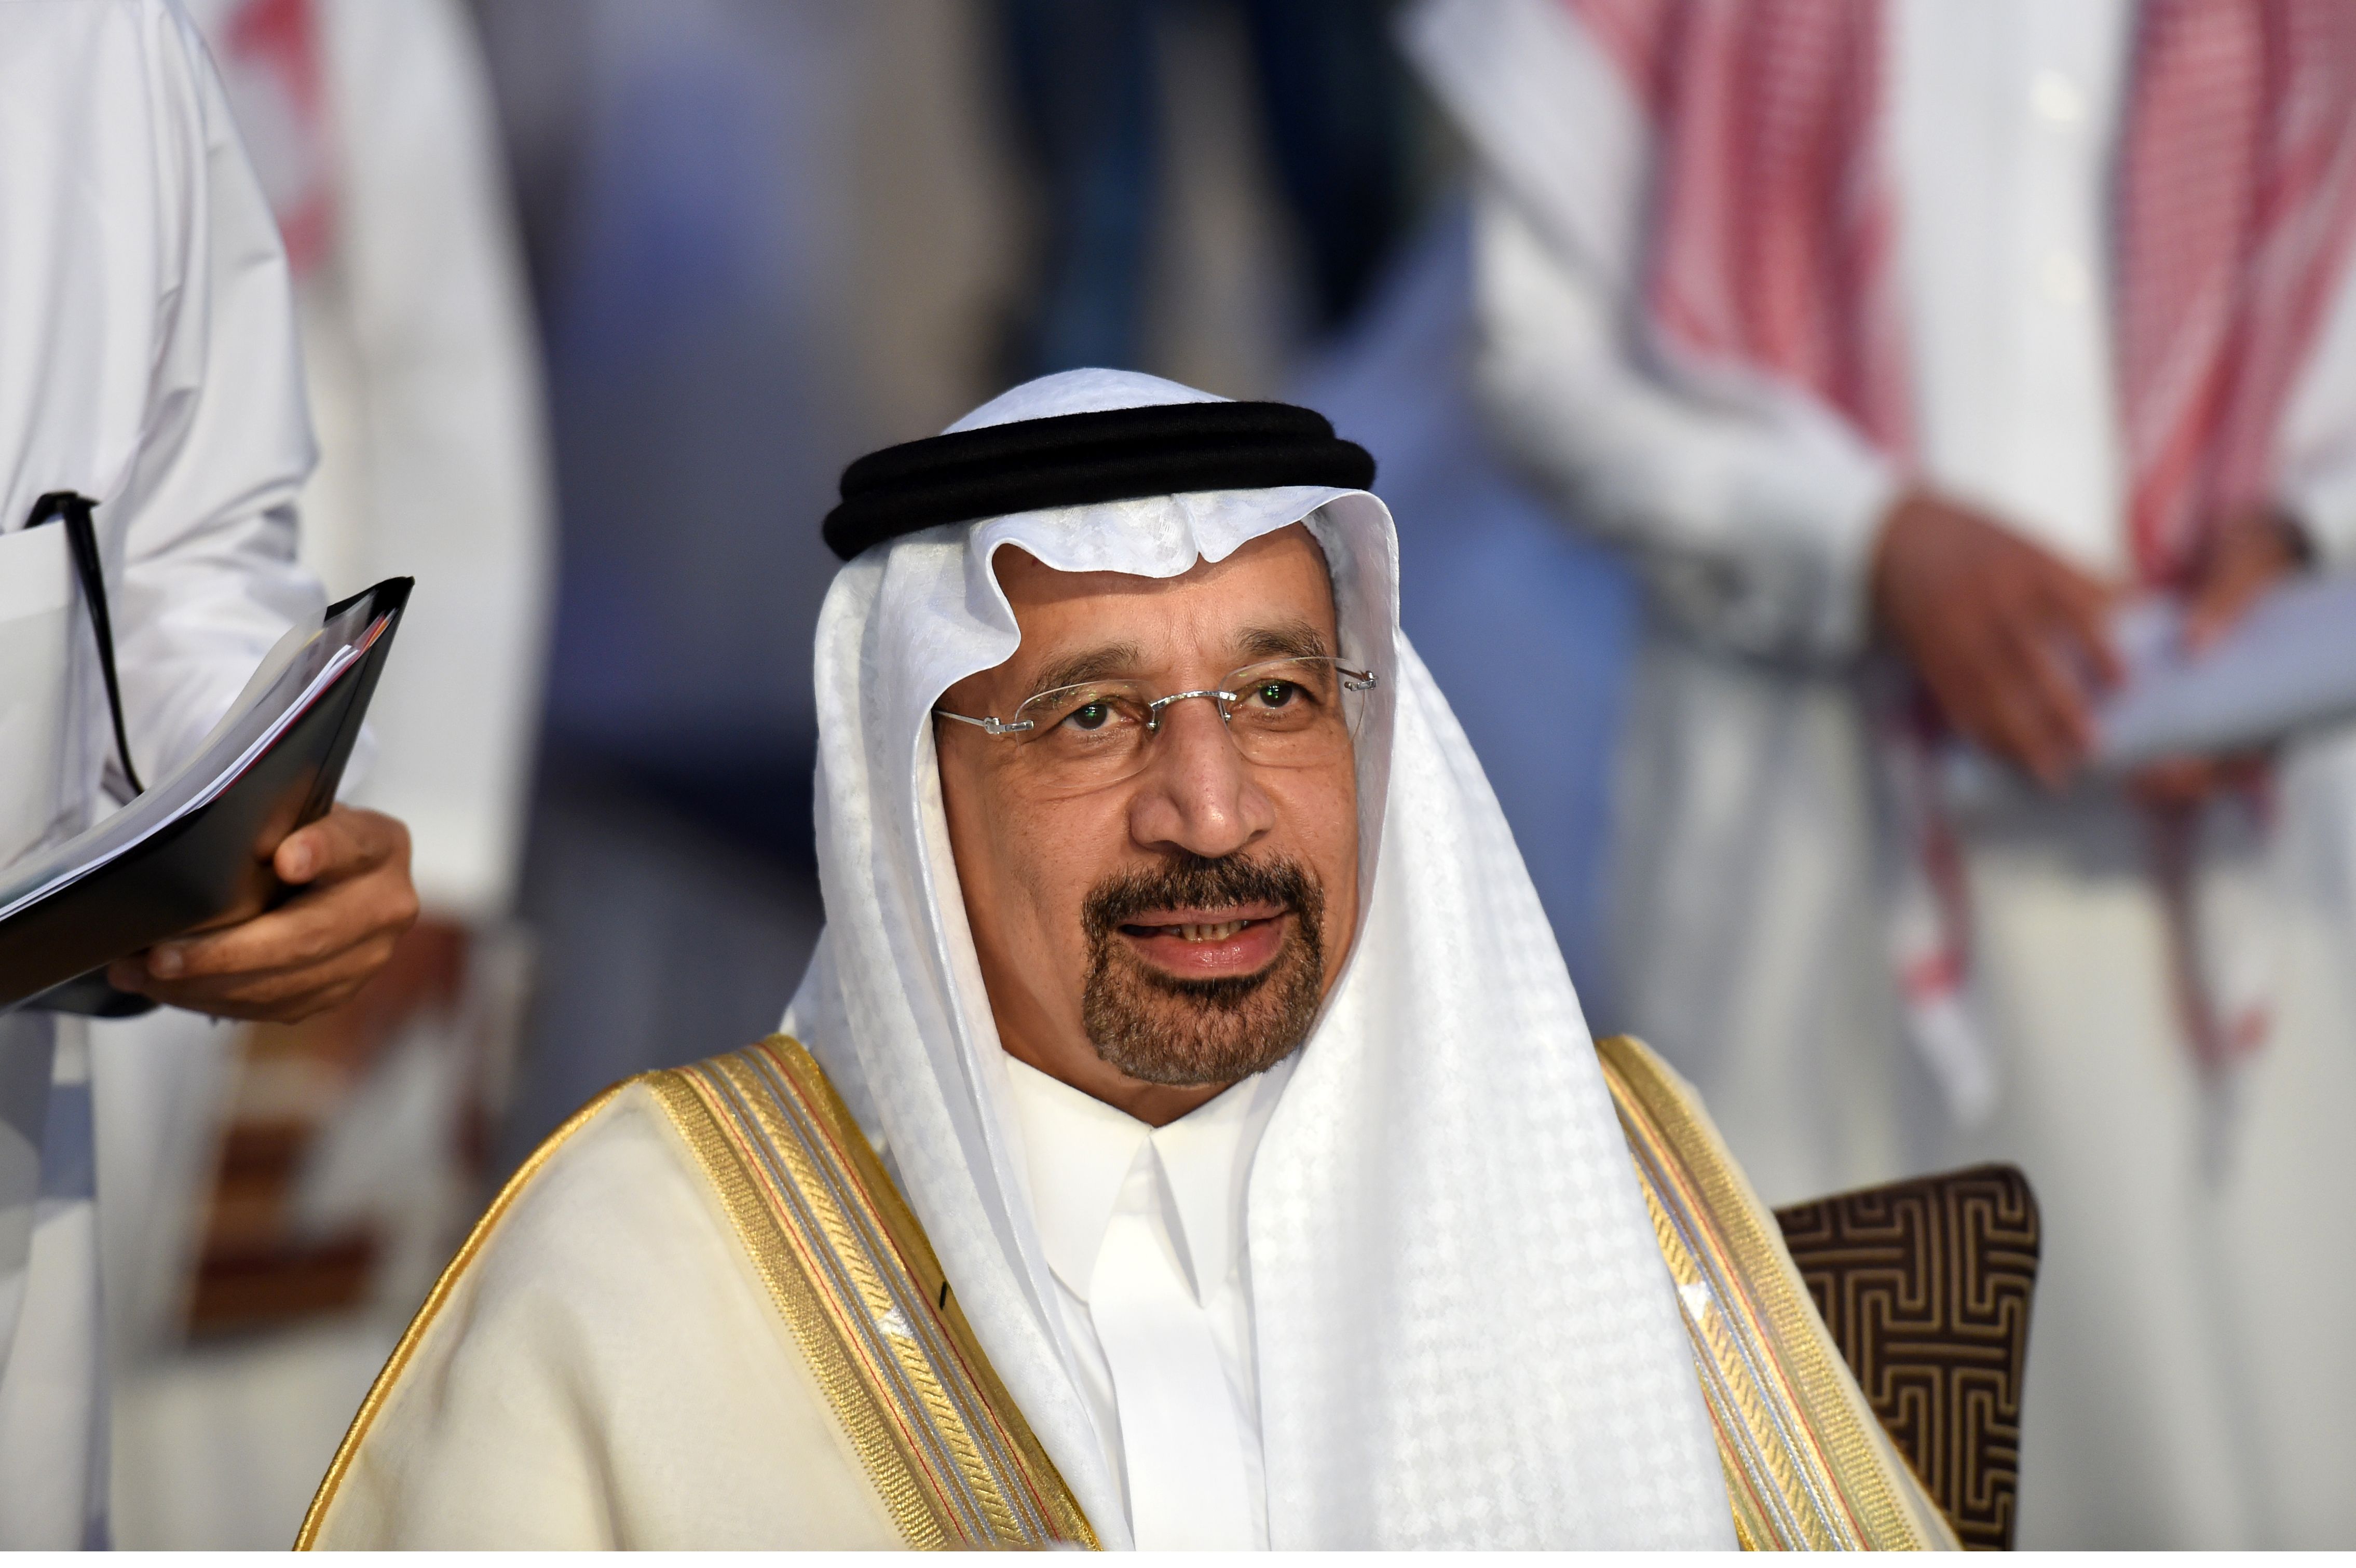 साउदी अरबका उर्जा मन्त्रीद्वारा दश लाख ब्यारेल तेल निर्यात घटाउन सुझाब